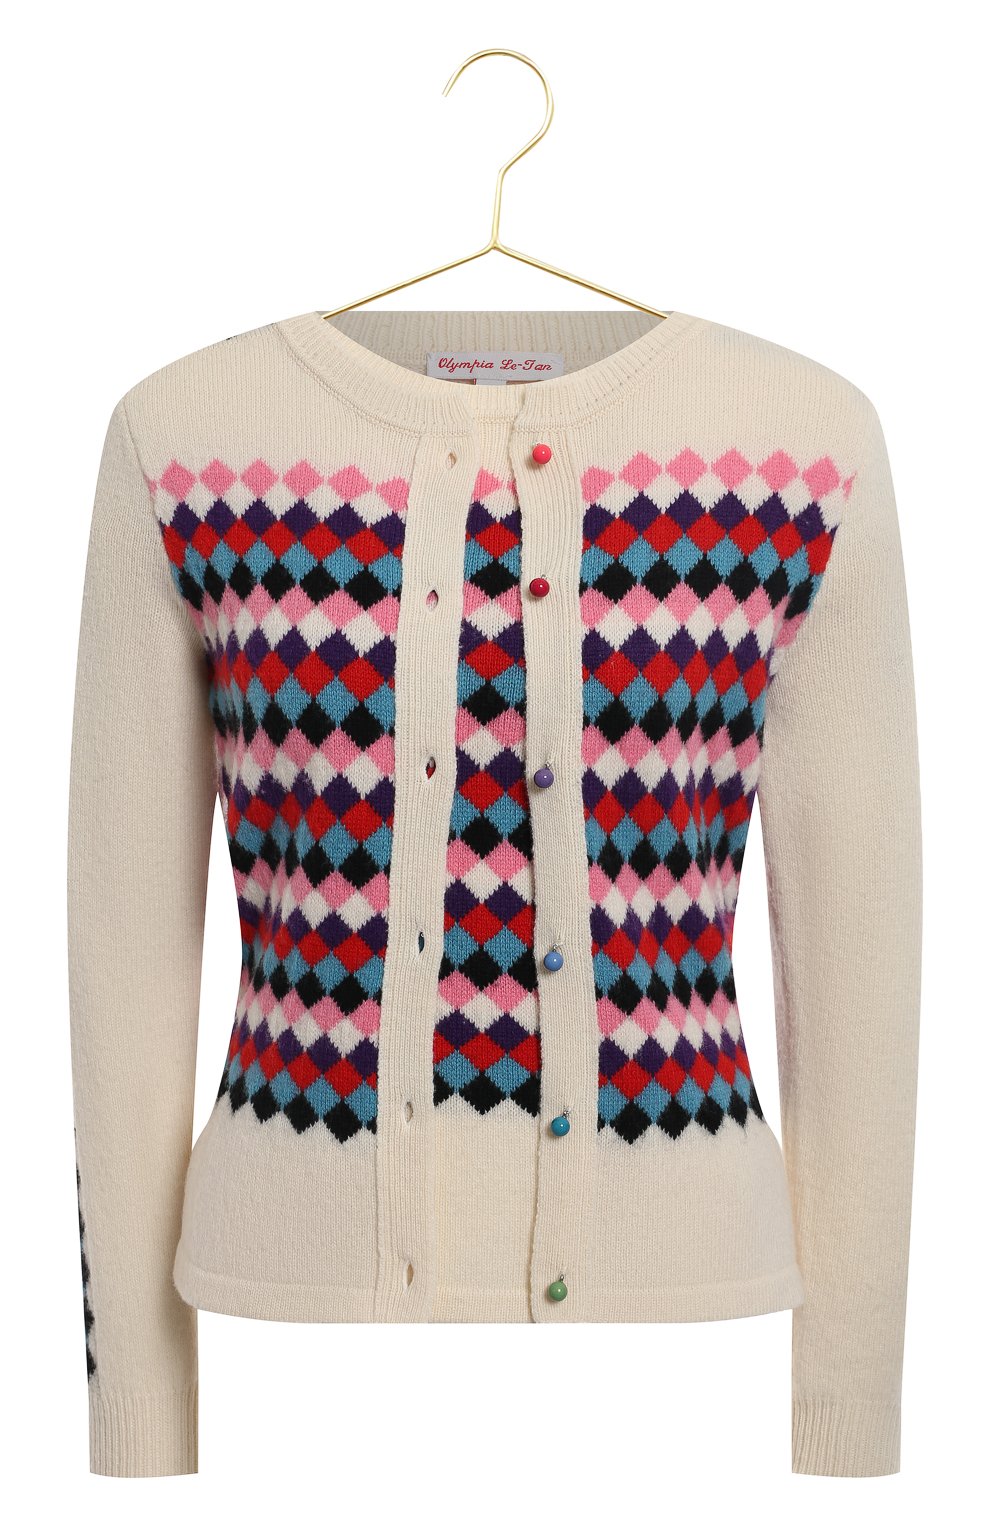 Шерстяной кардиган и пуловер | Olympia Le-Tan | Разноцветный - 1